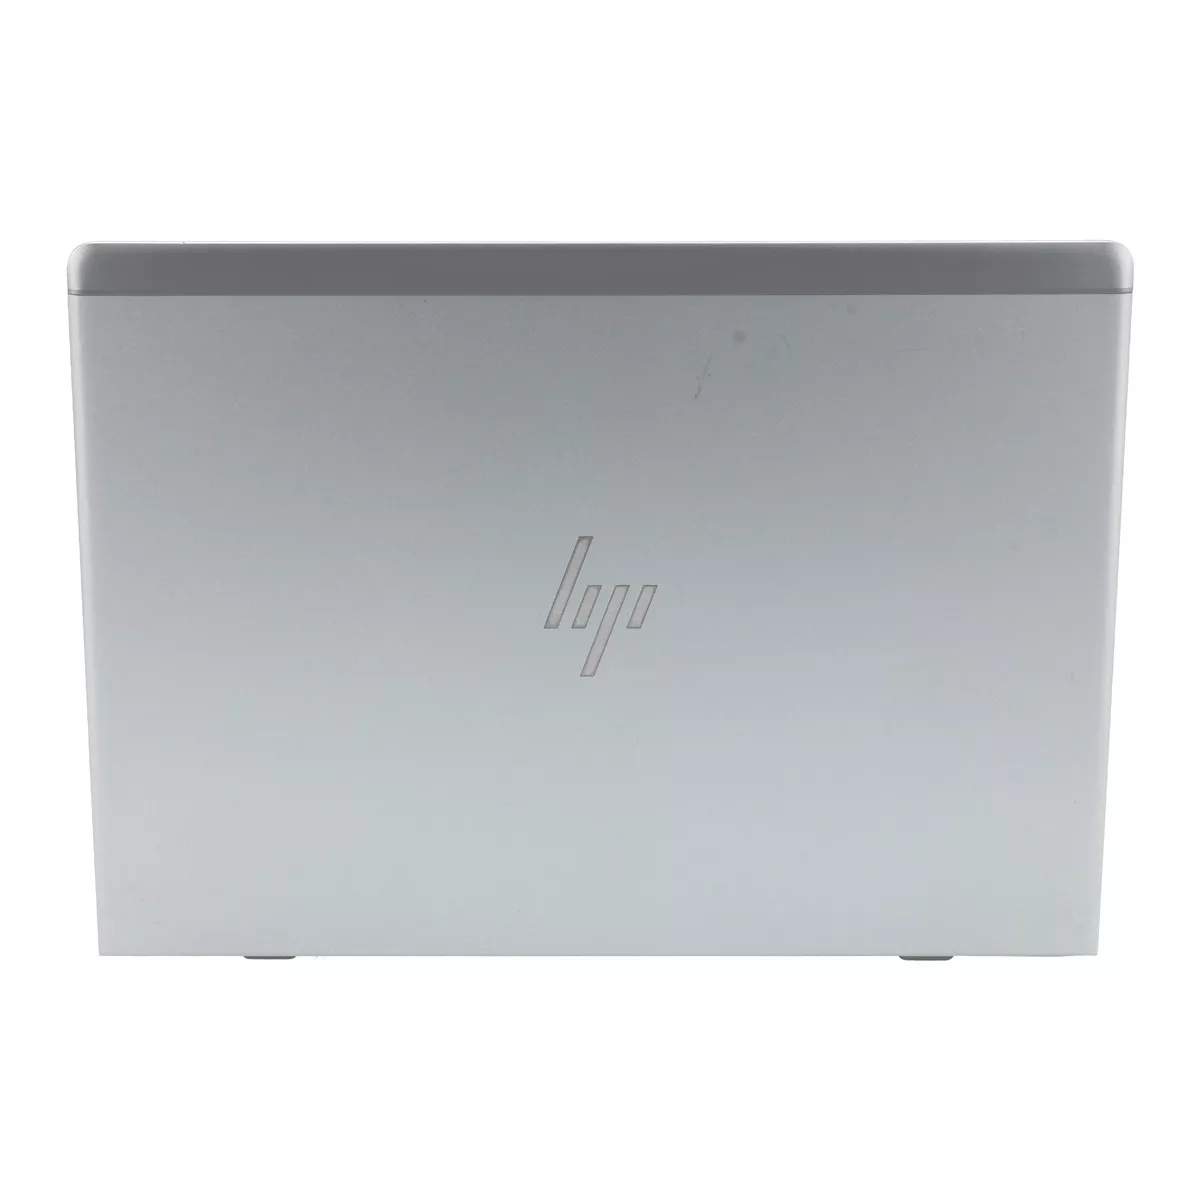 HP EliteBook 830 G6 Core i5 8365U Full-HD 240 GB M.2 nVME SSD Webcam A+